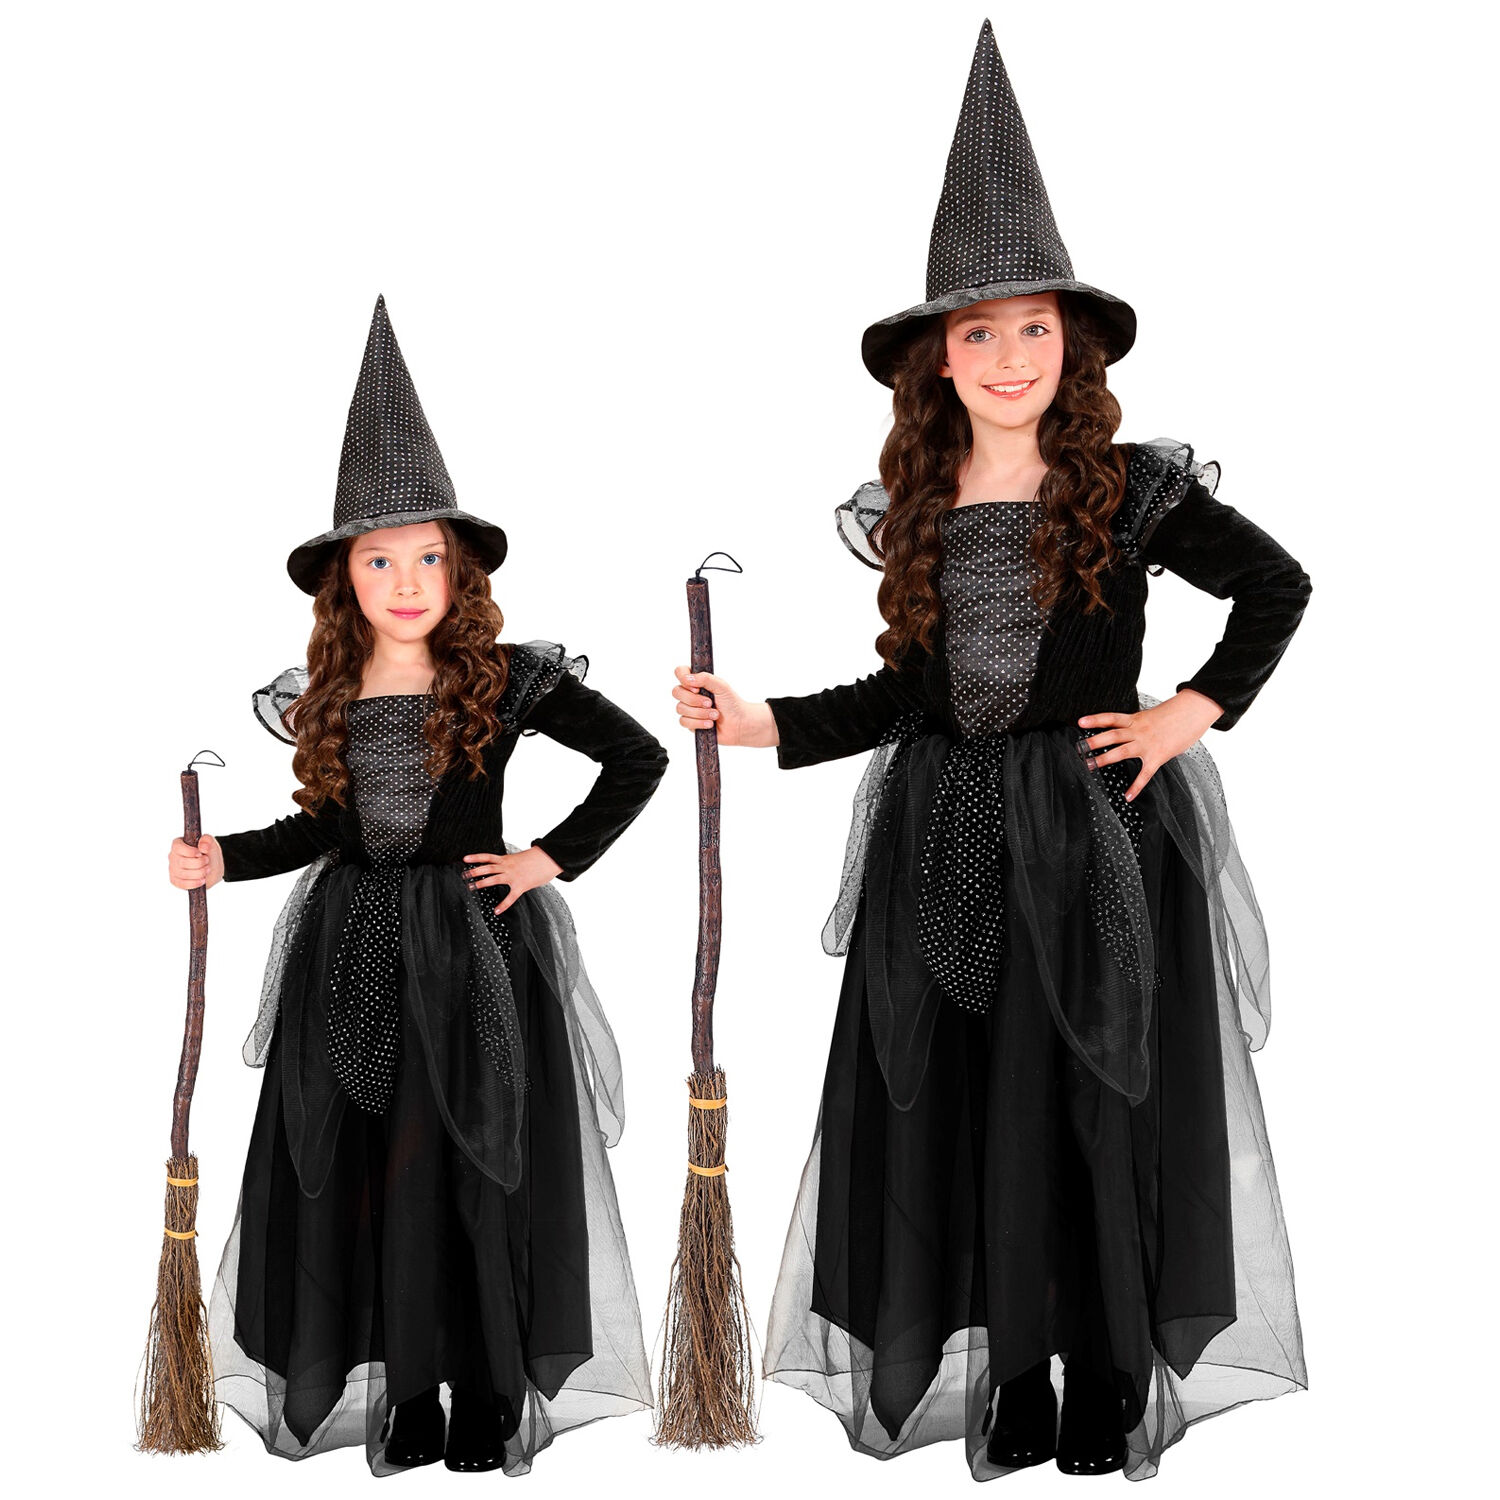 NEU Kinder-Kostüm Hexe, Kleid mit Hexenhut, schwarz, Gr. 98, für Kinder von 1-2 Jahren